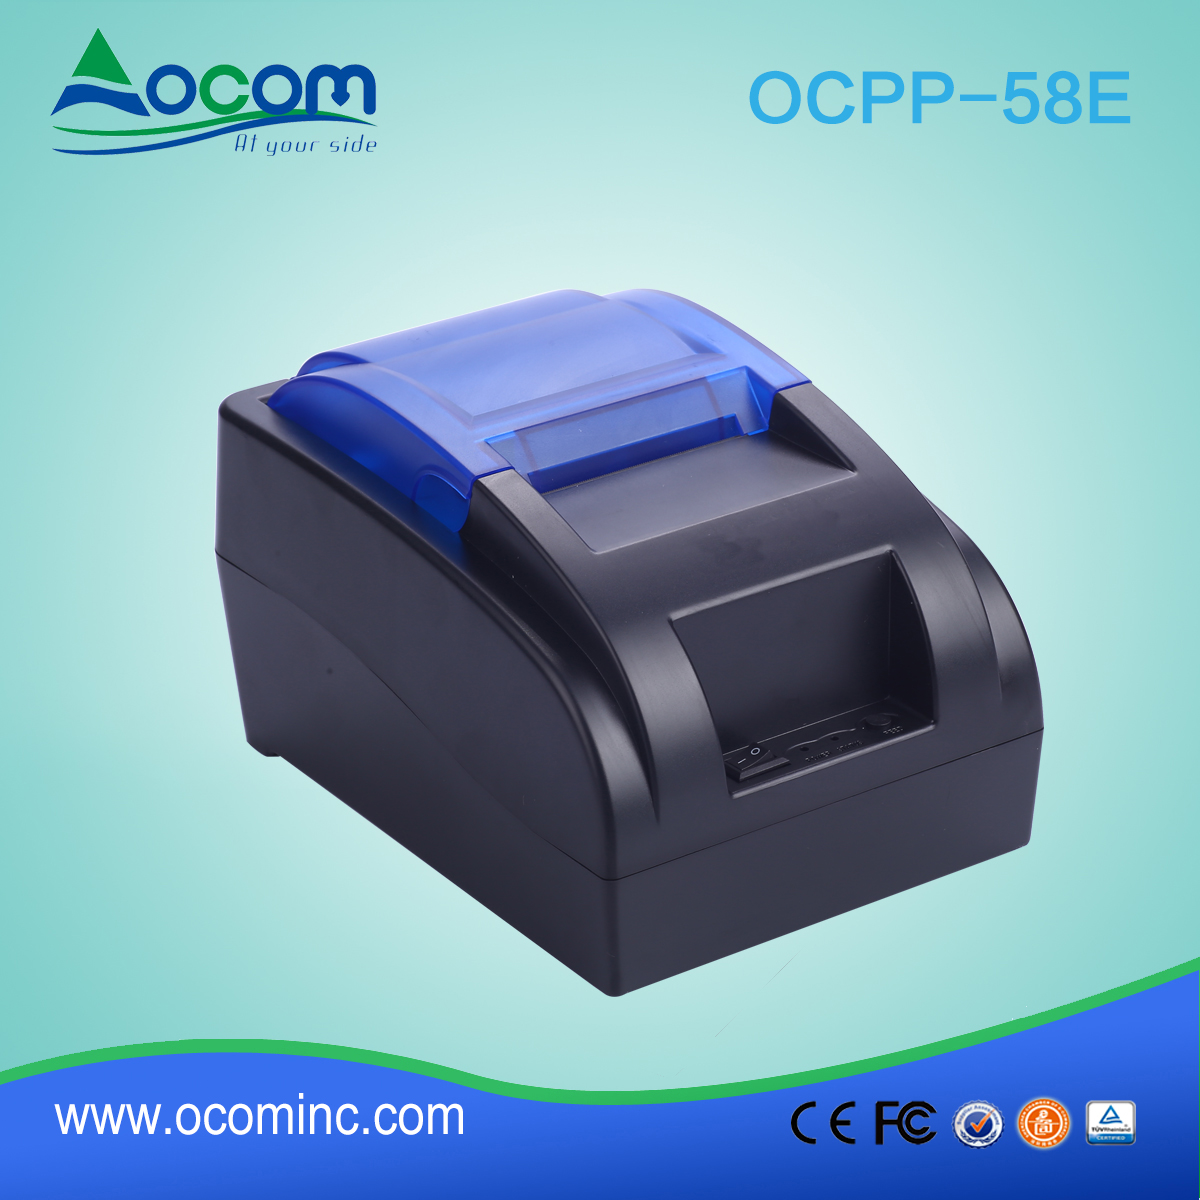 OCPP -58E OCOM 58 mm qr-code restaurantbon pos thermische printer